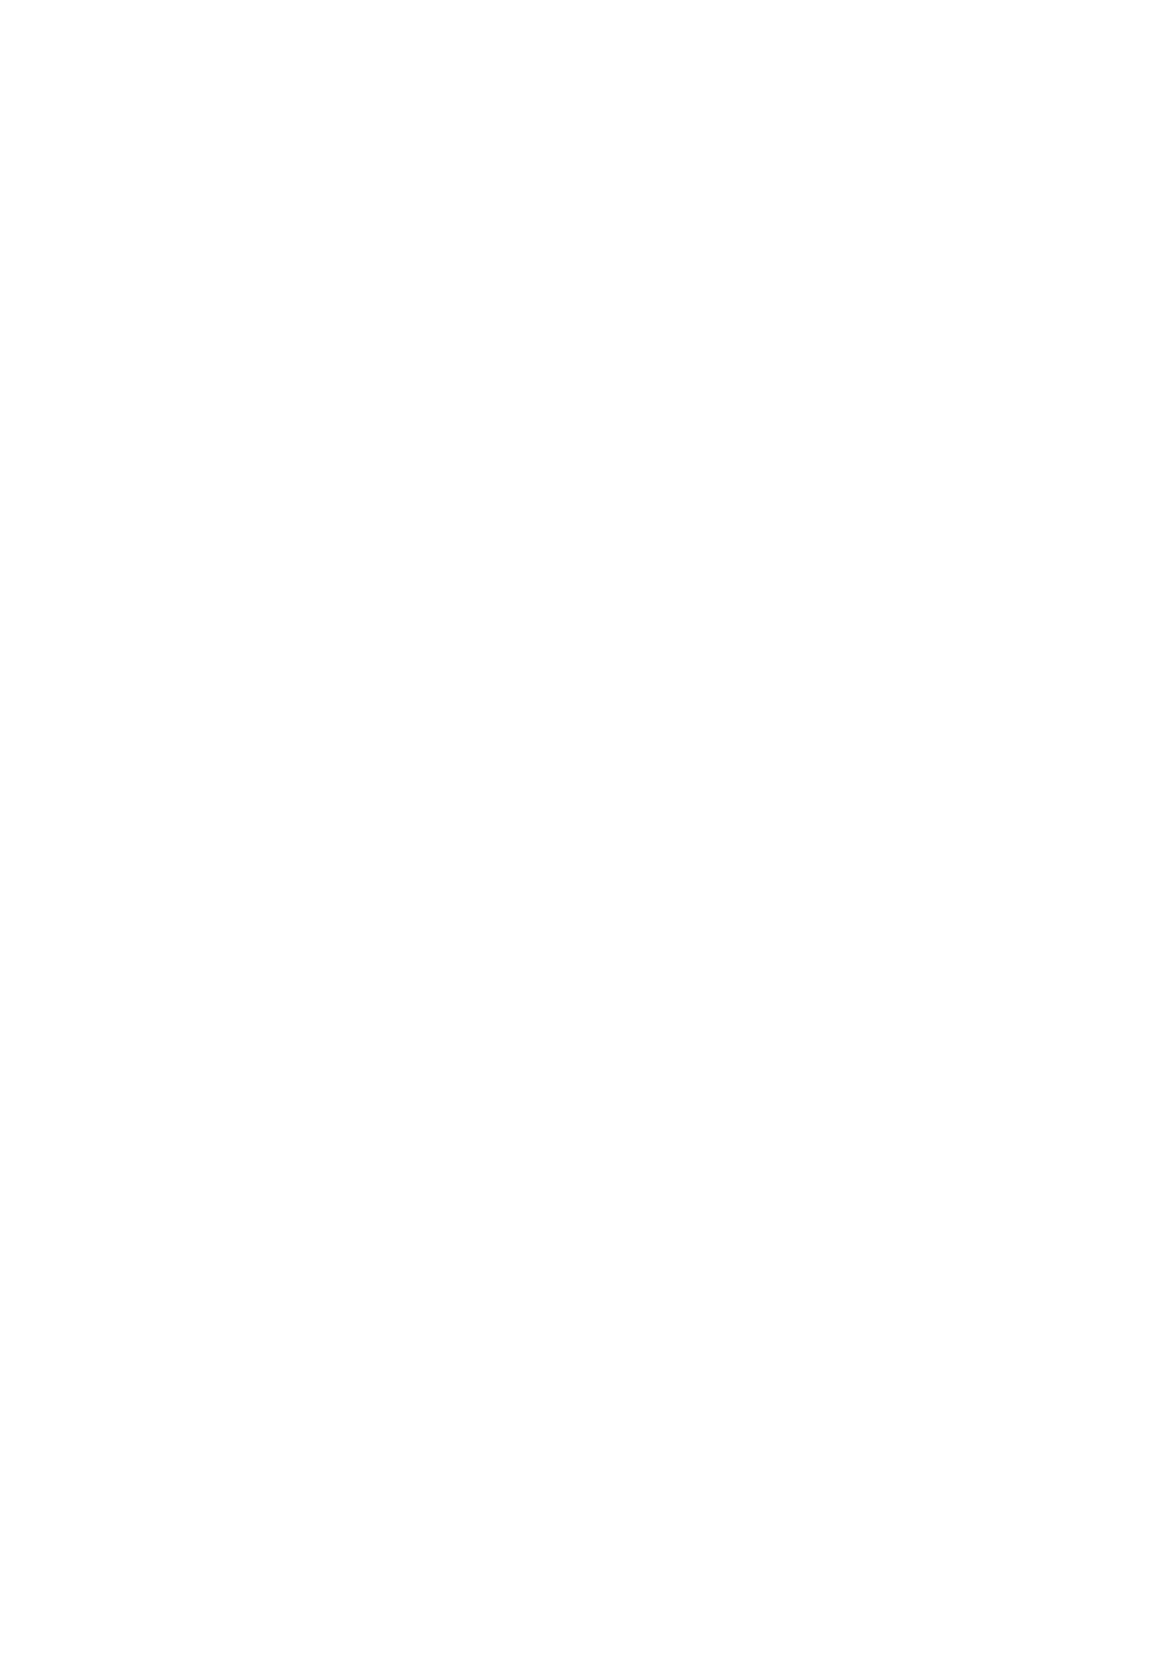 [火愚夜] 特務戦隊カラフル・フォース 正義のヒロインvs触手女王! フタナリ調教大決戦!? [DL版]